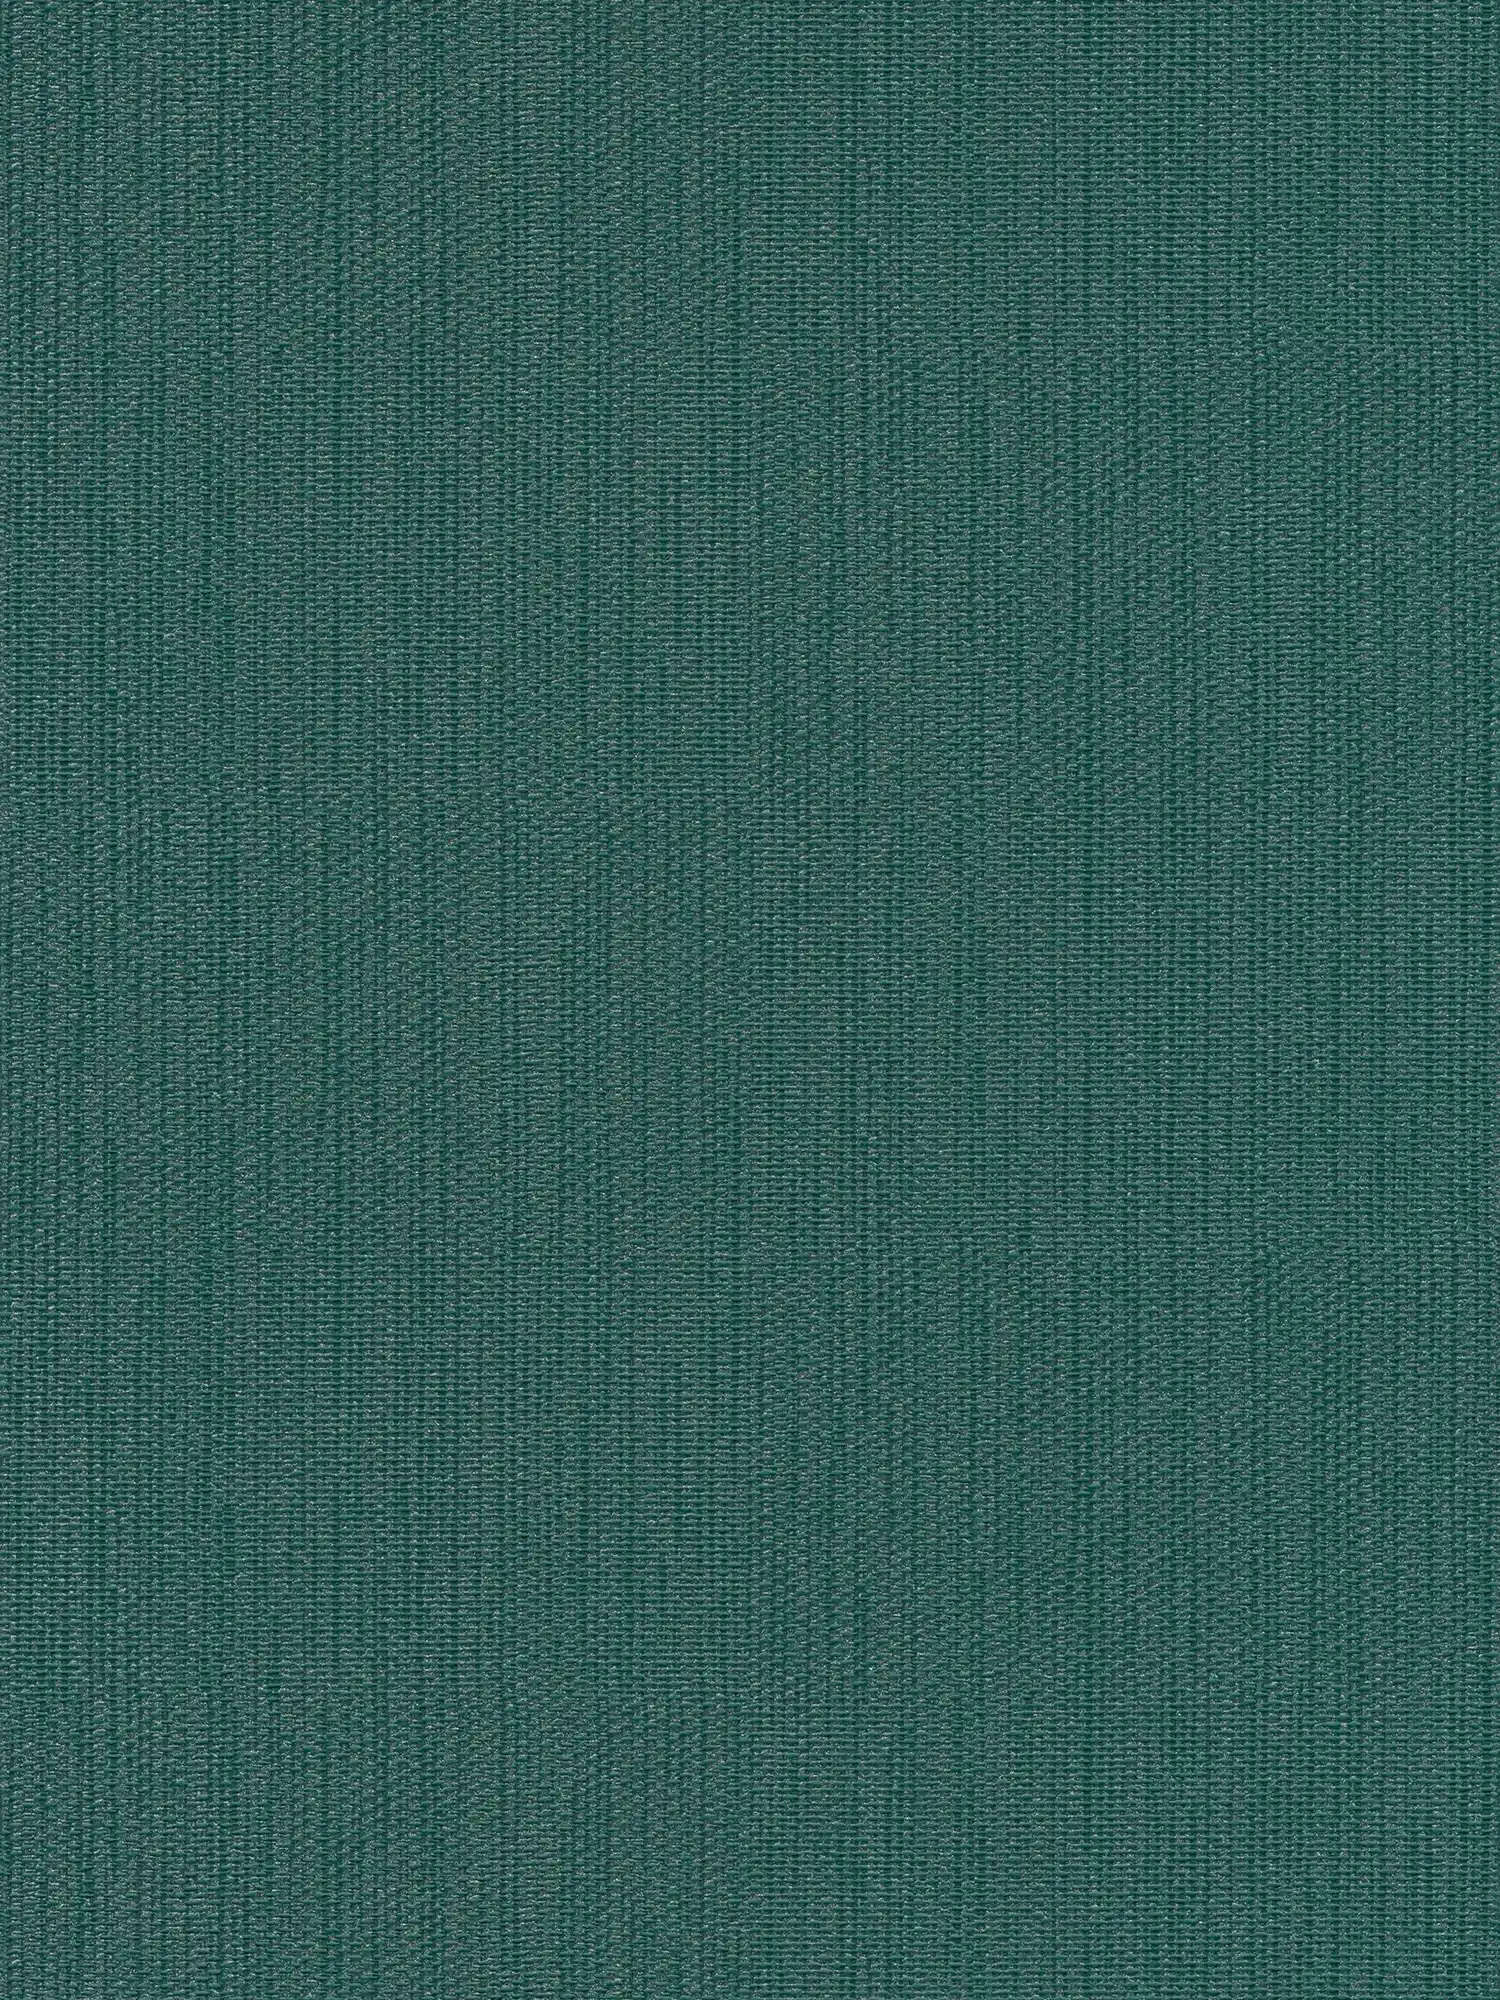 Effen vliesbehang in textiellook - groen, donkergroen
